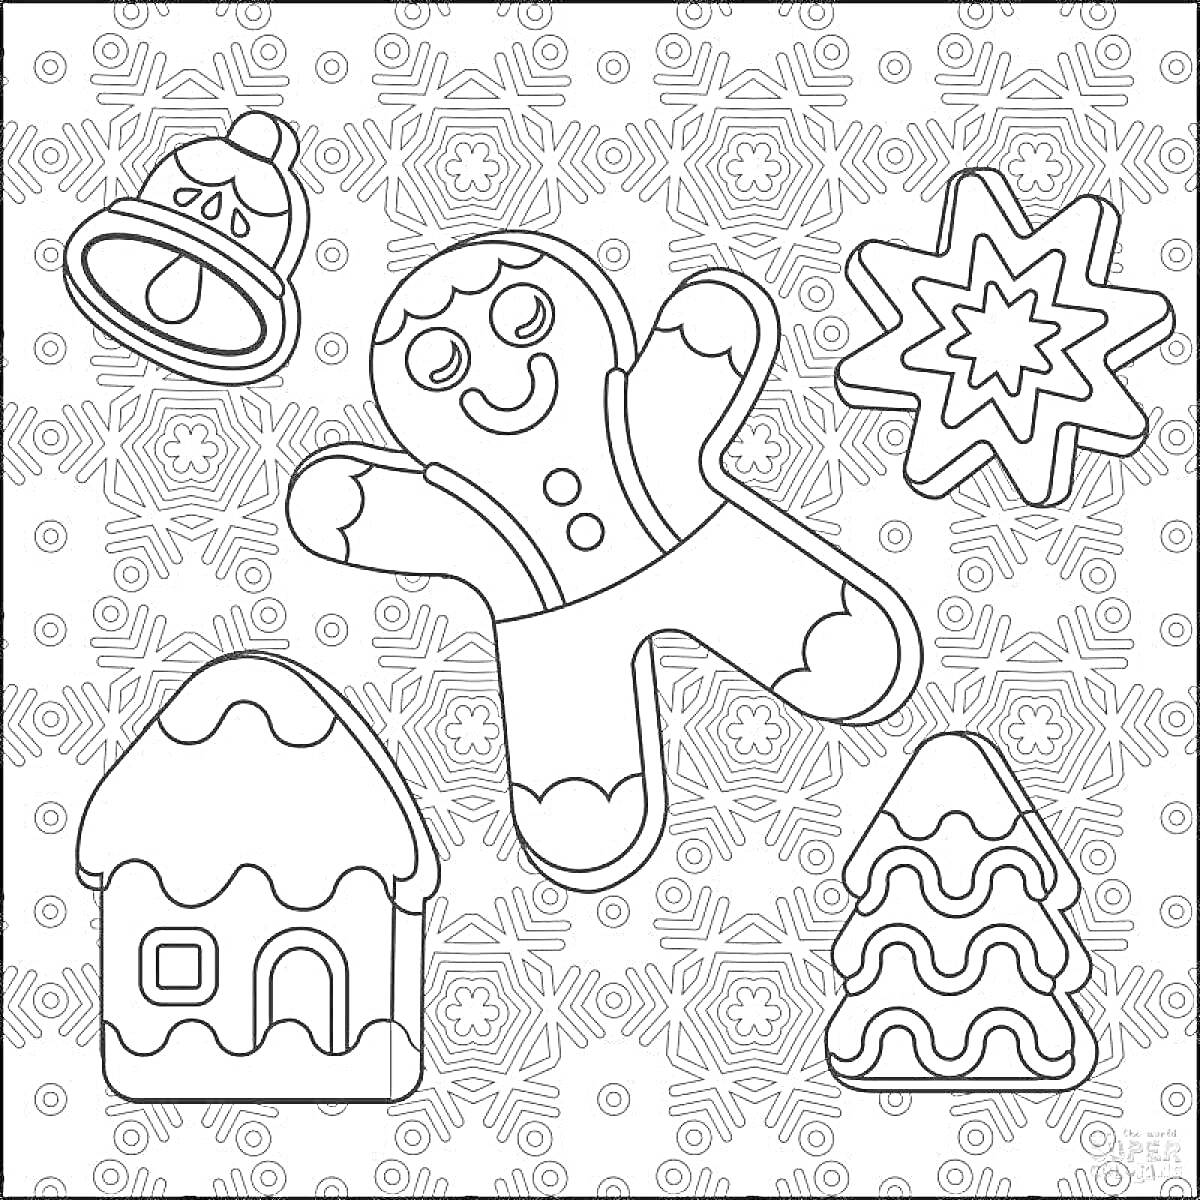 Раскраска Рождественский пряник с колокольчиком, пряничным человечком, звездой, домиком и ёлкой на фоне снежинок